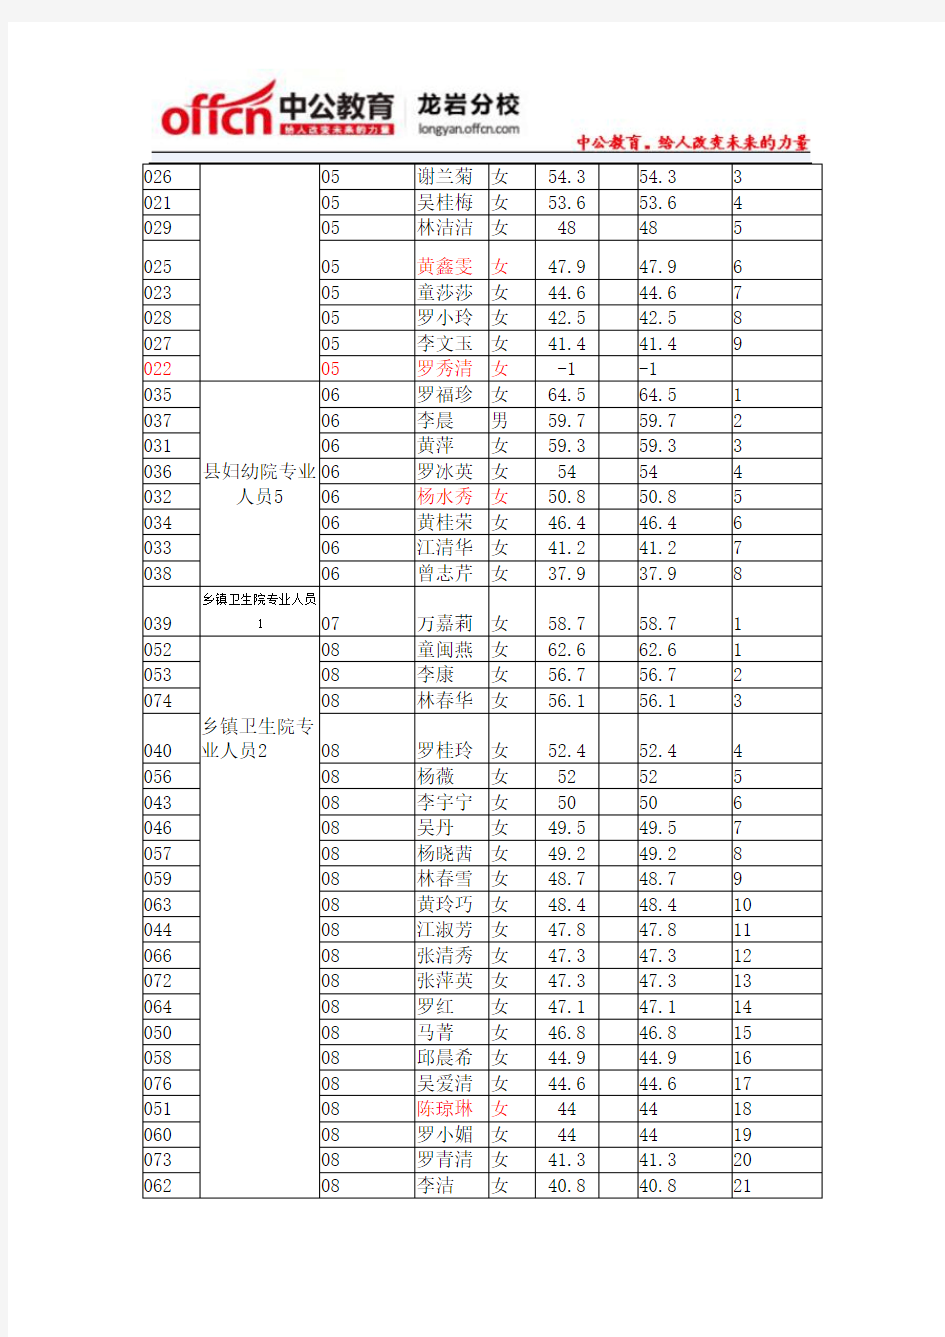 2014年龙岩连城事业单位笔试总成绩排名